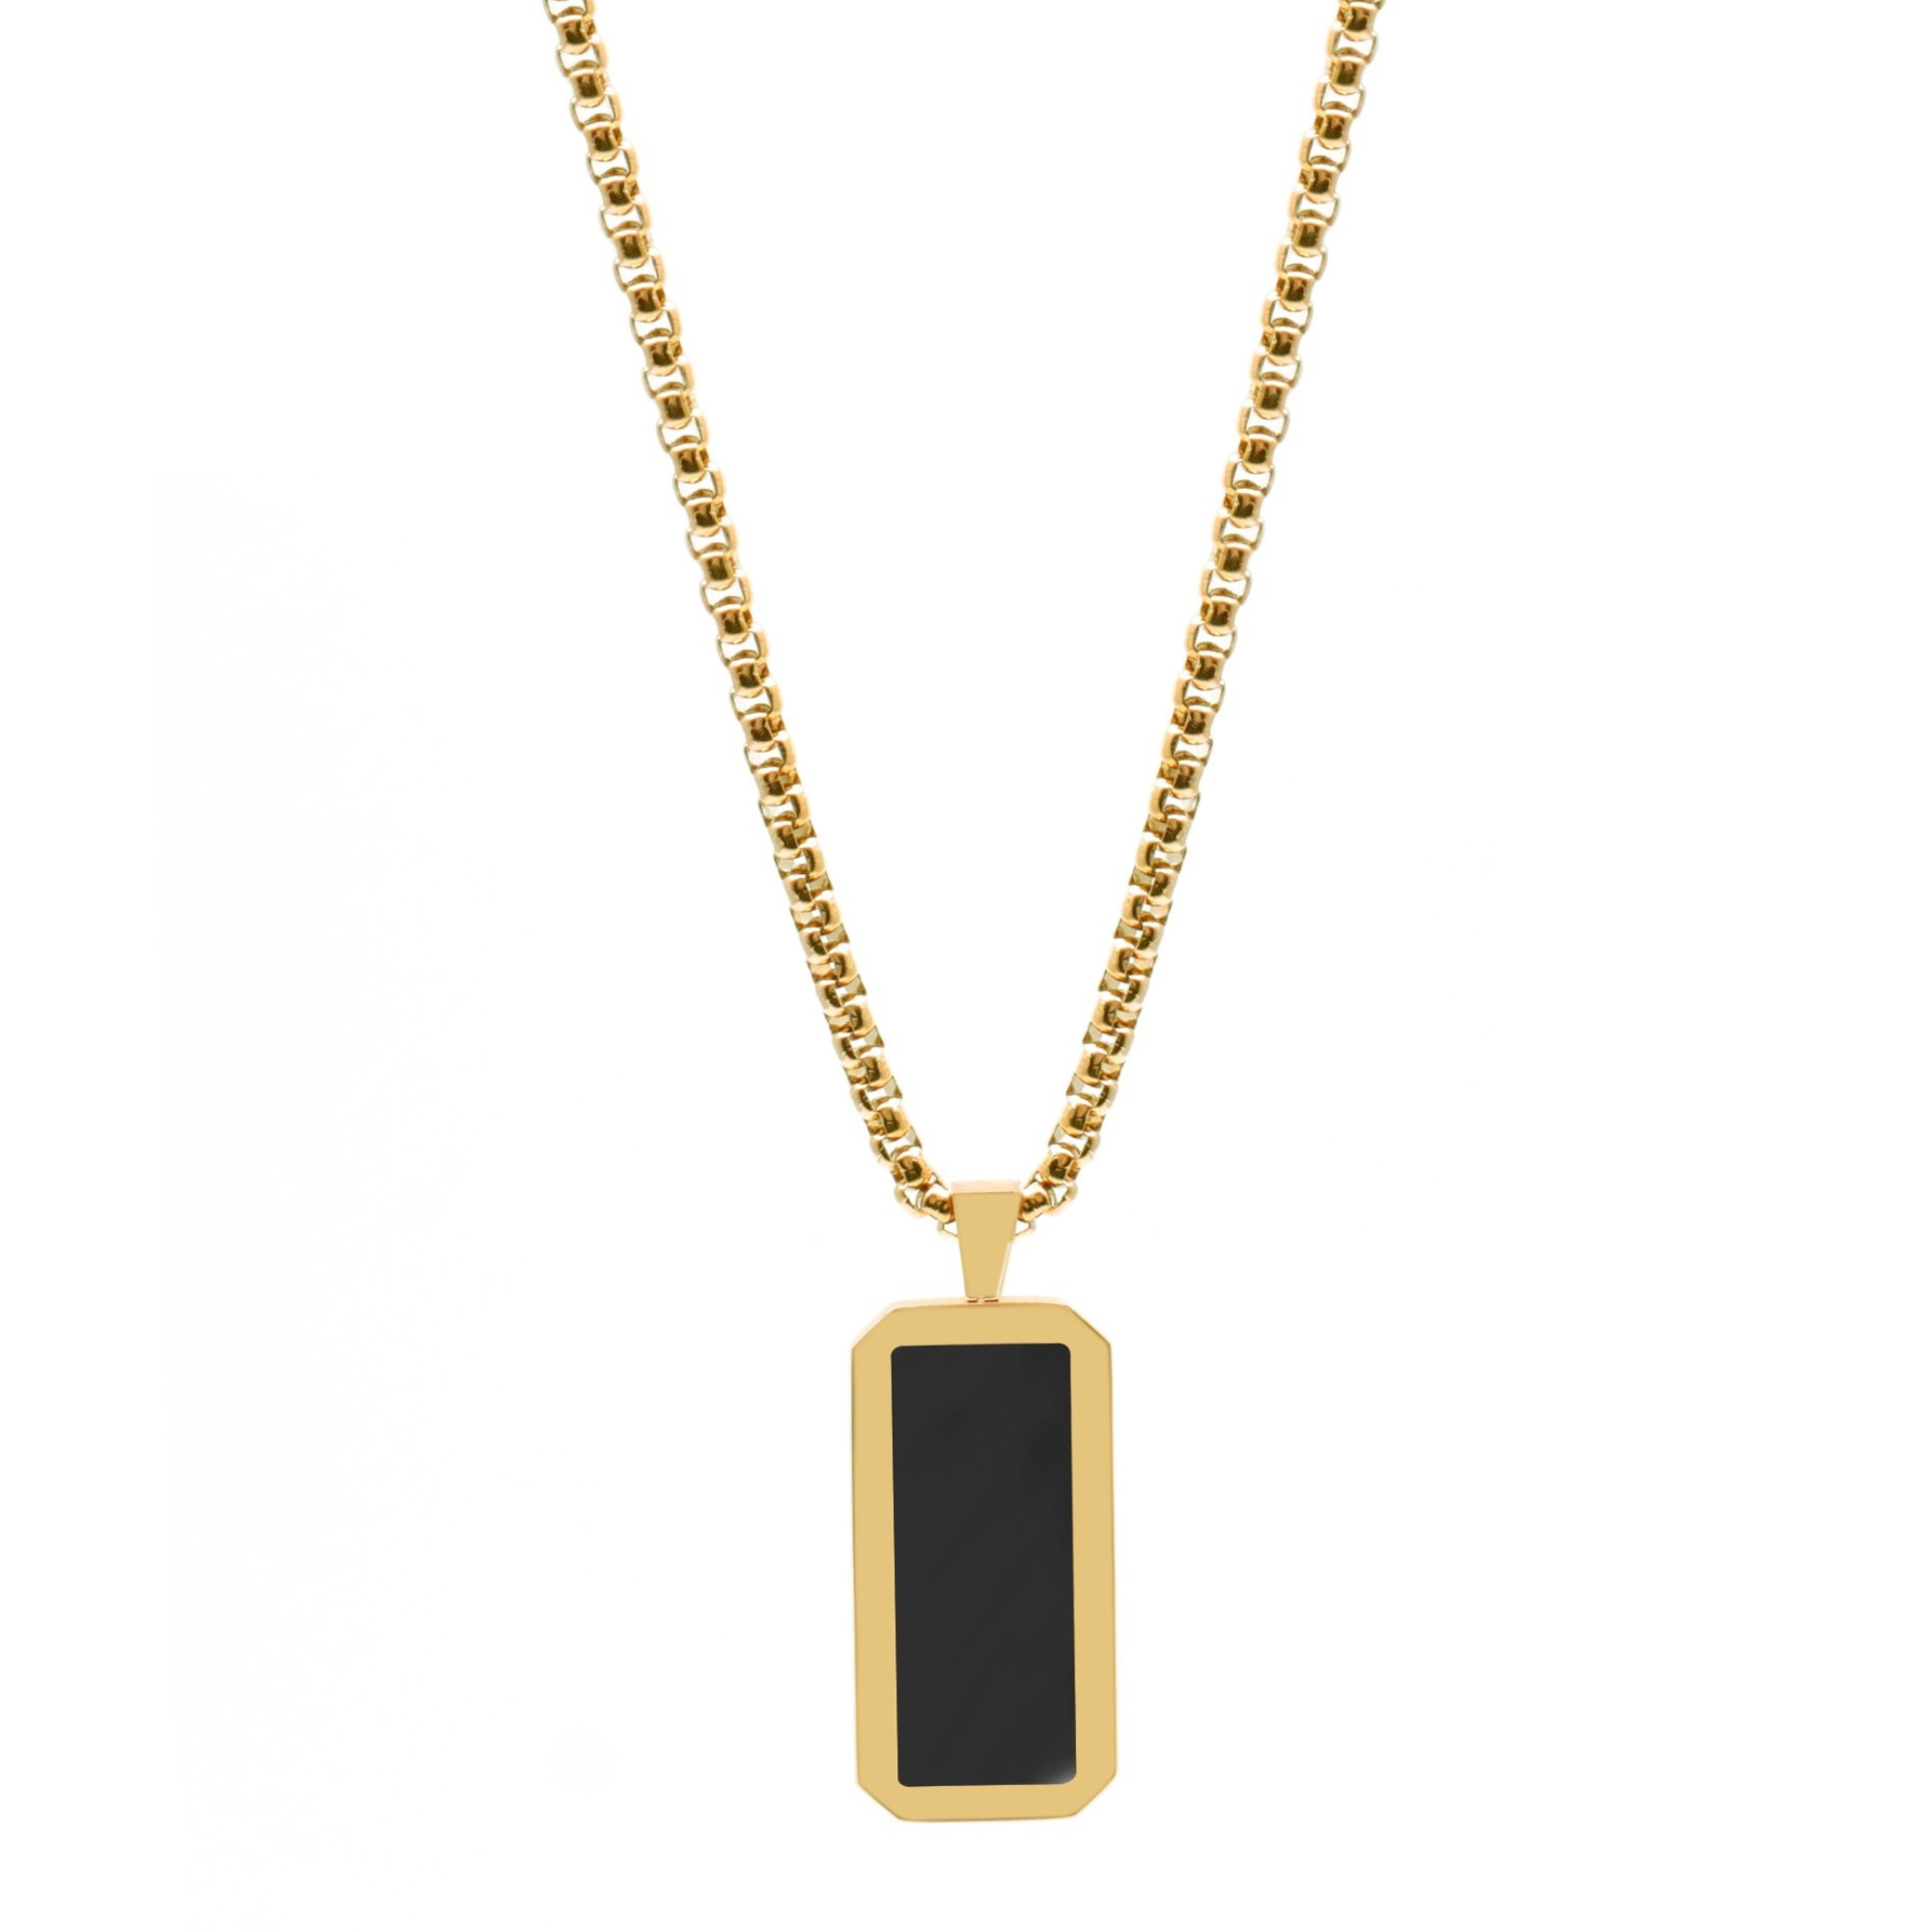 NL Black Onyx pendant - Gold-toned